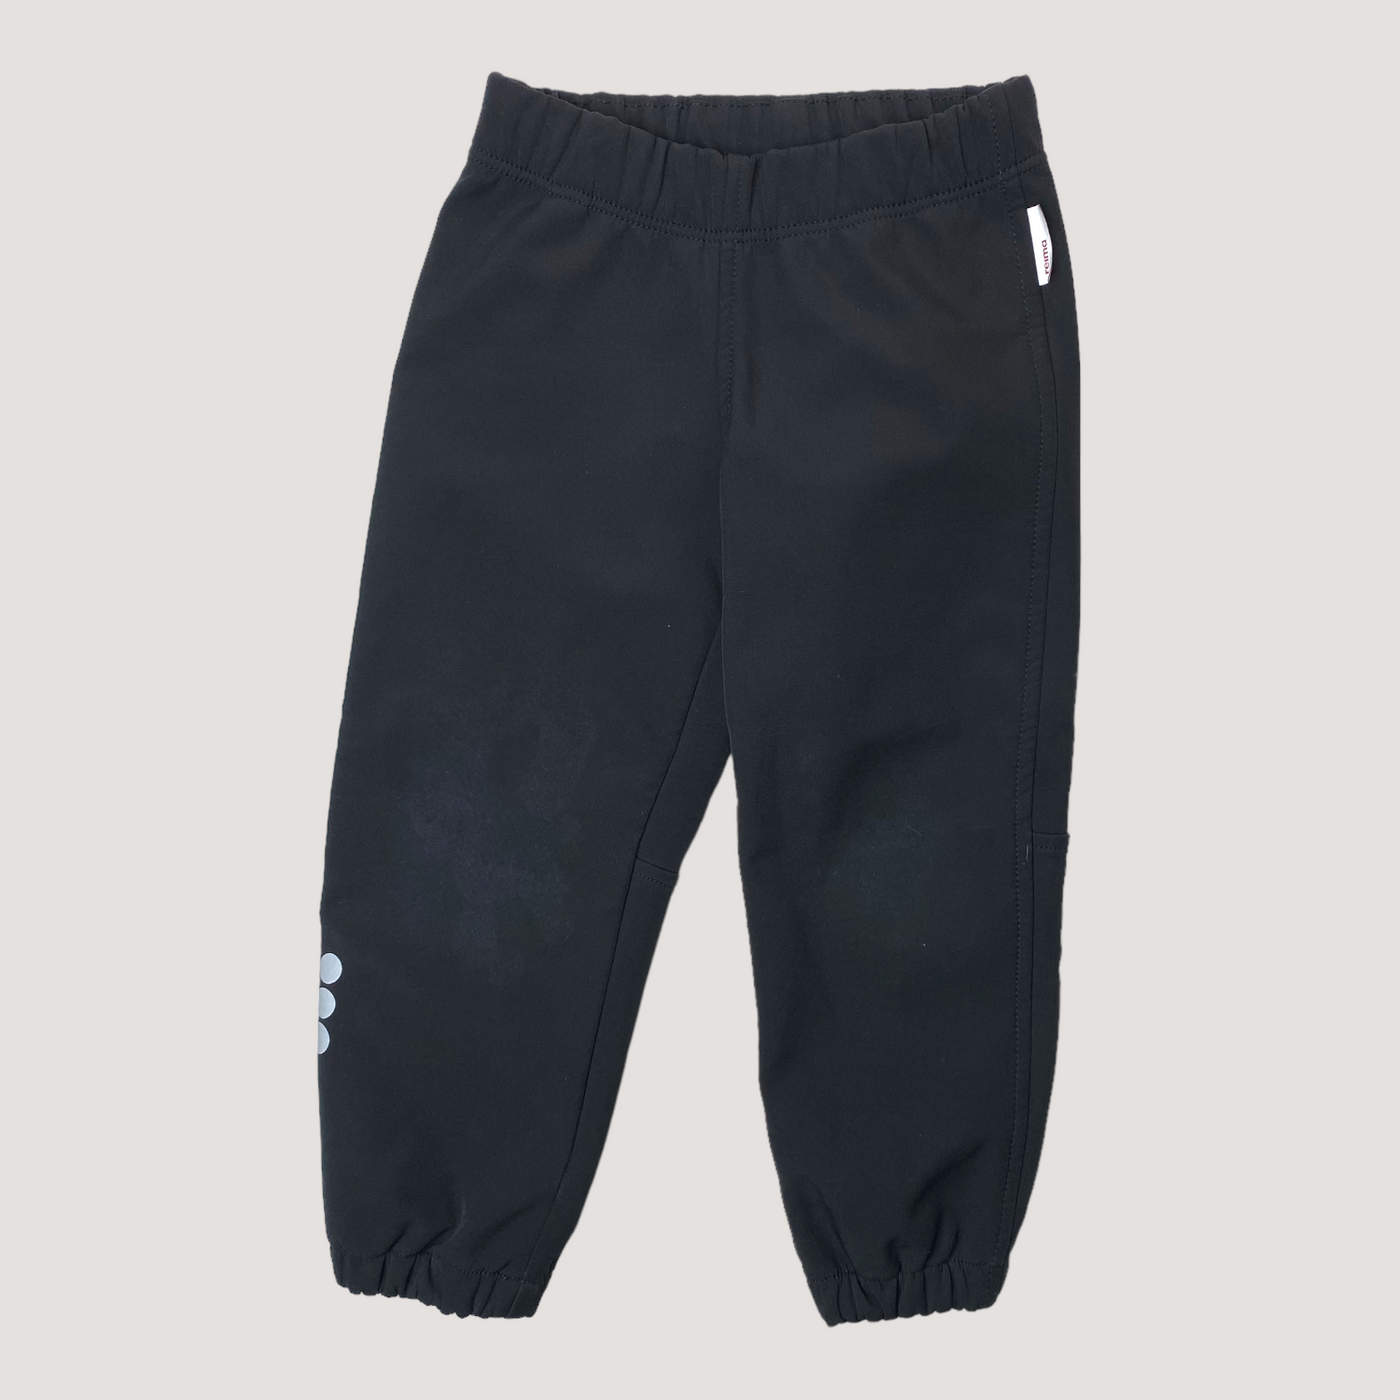 Reima midseason oikotie softshell pants, black | 104cm